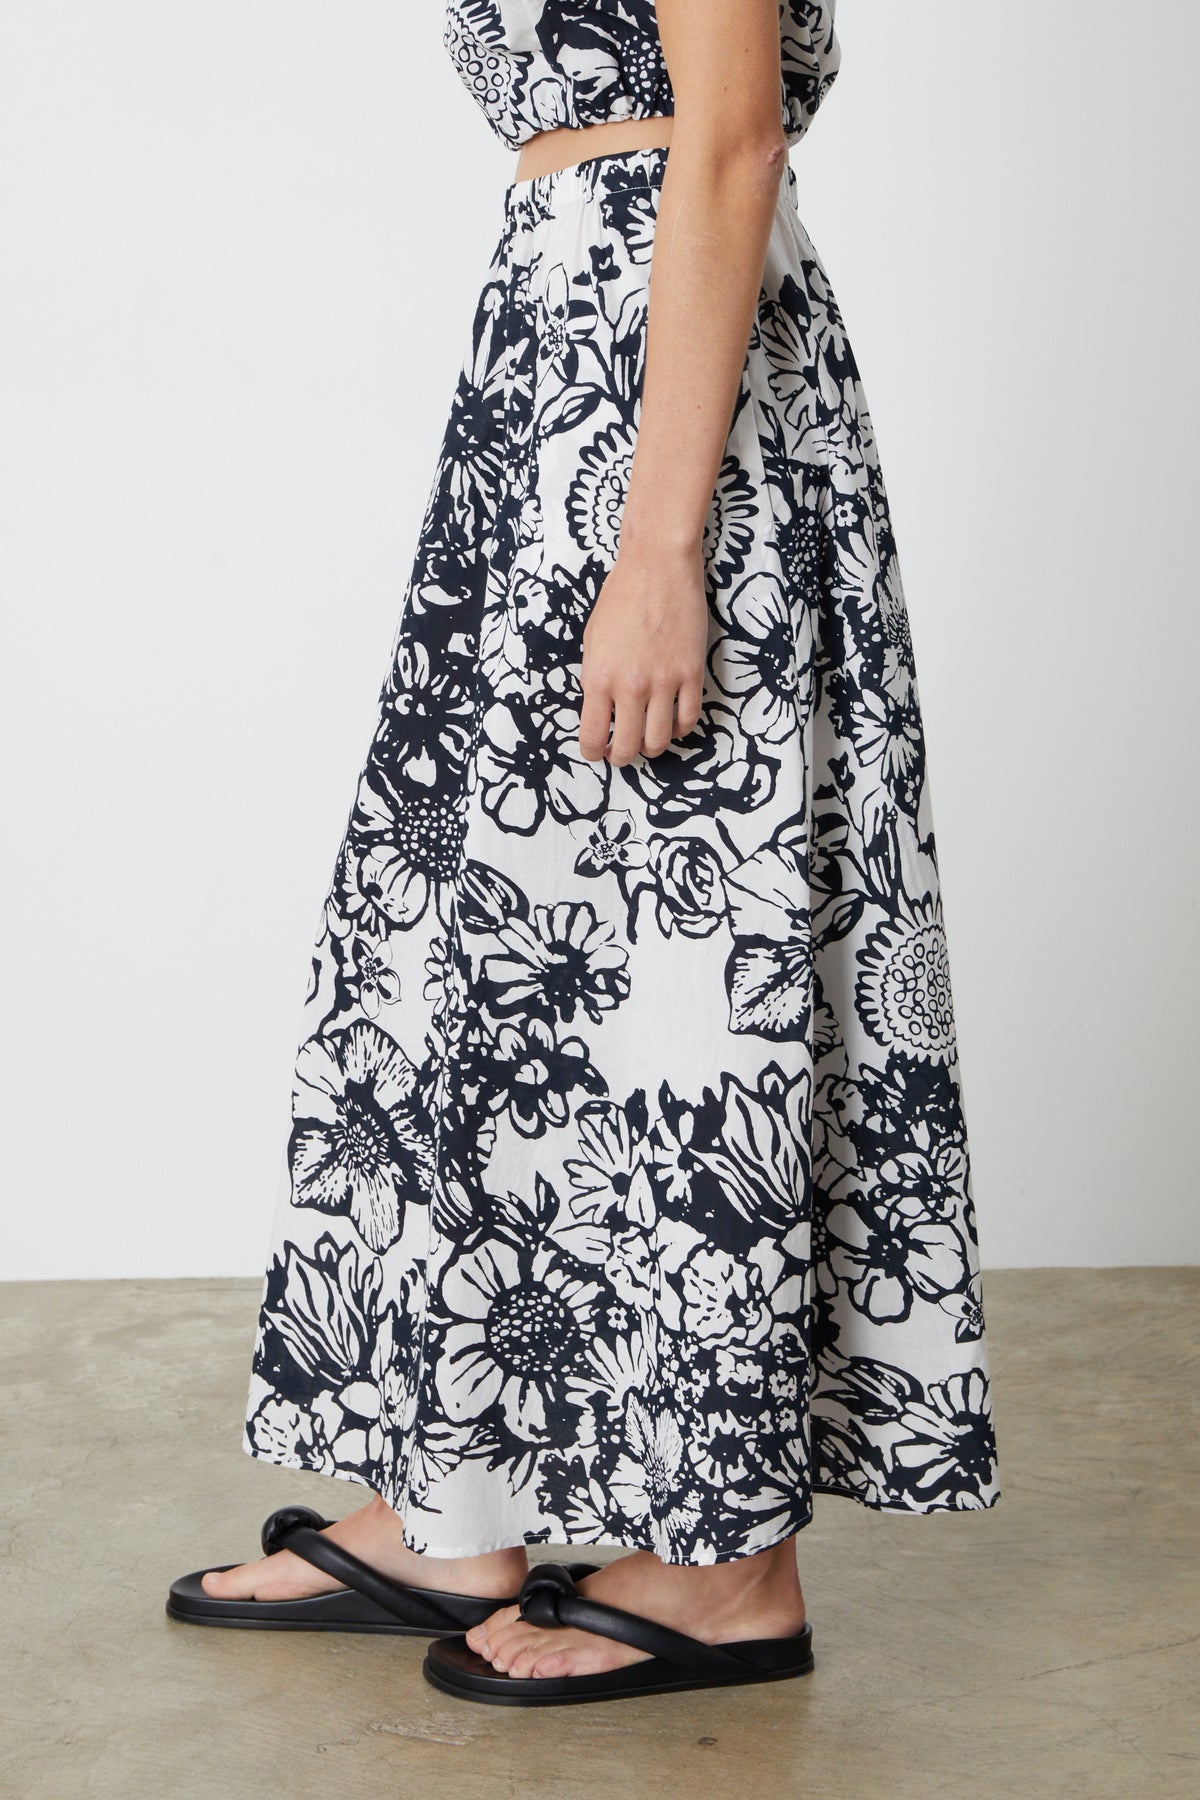 The model is wearing a Velvet by Graham & Spencer Juliana printed maxi skirt.-26793045754049